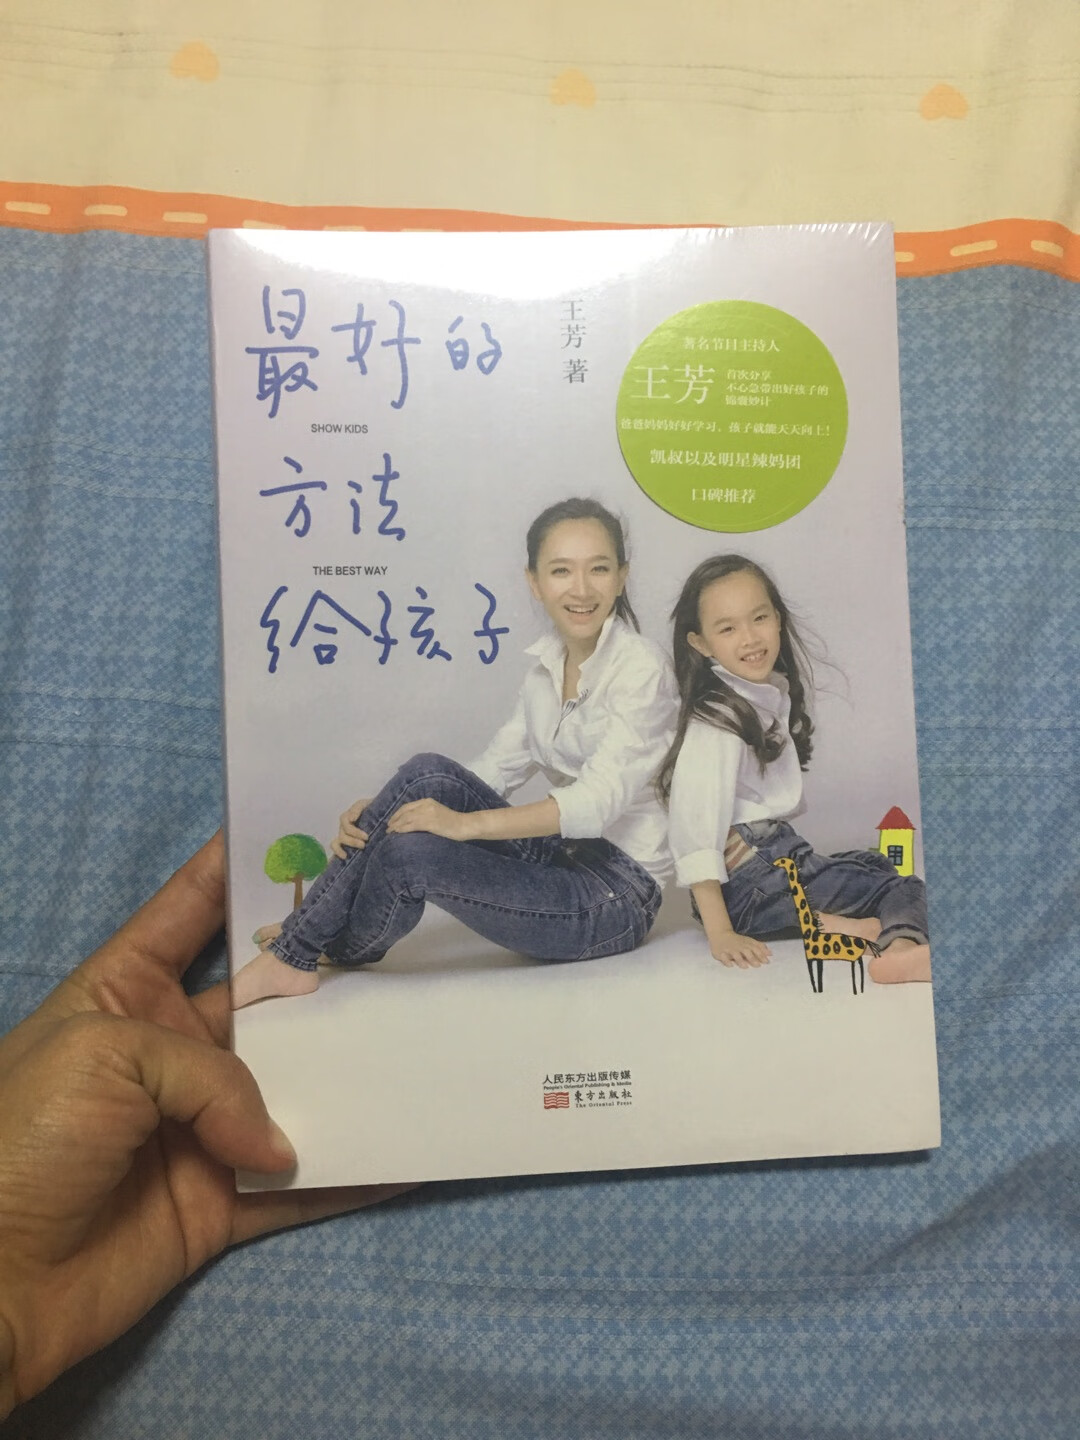 很喜欢王芳，所以买了她的书，育儿先育己，看优秀的育儿书，学优秀的育儿理念。